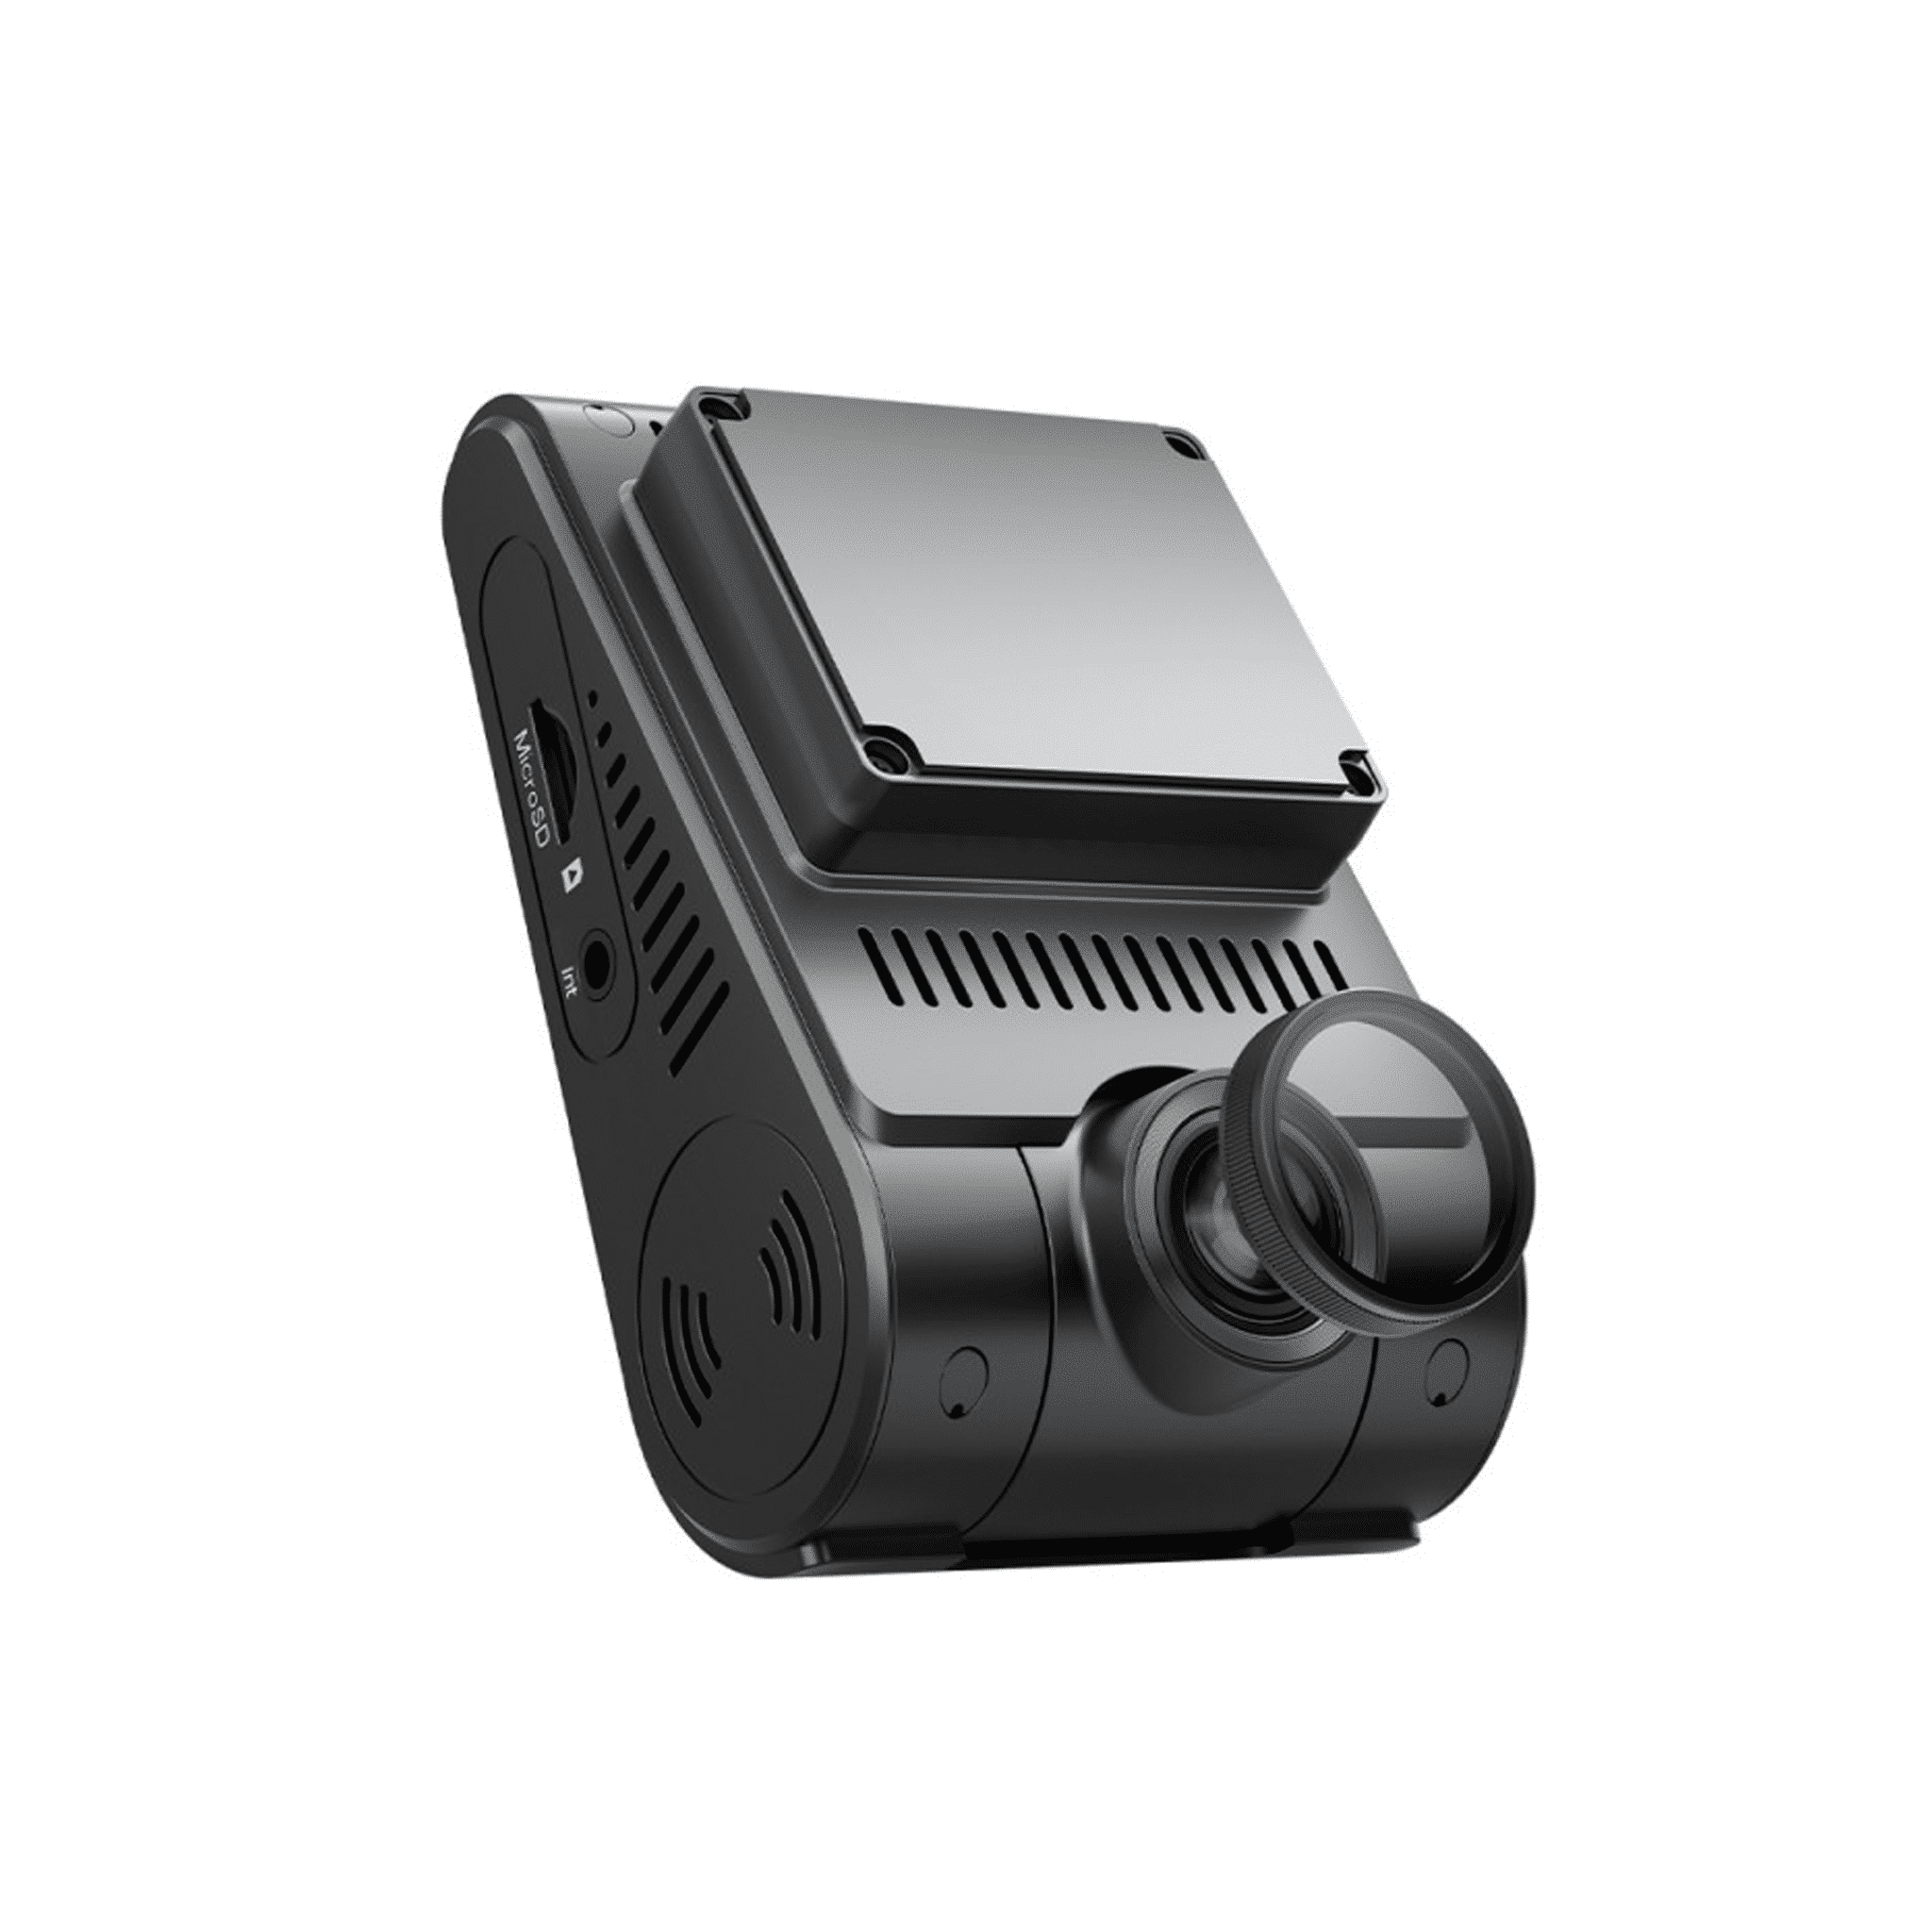 VIOFO A229 Plus 3Ch 1440p Dashcam